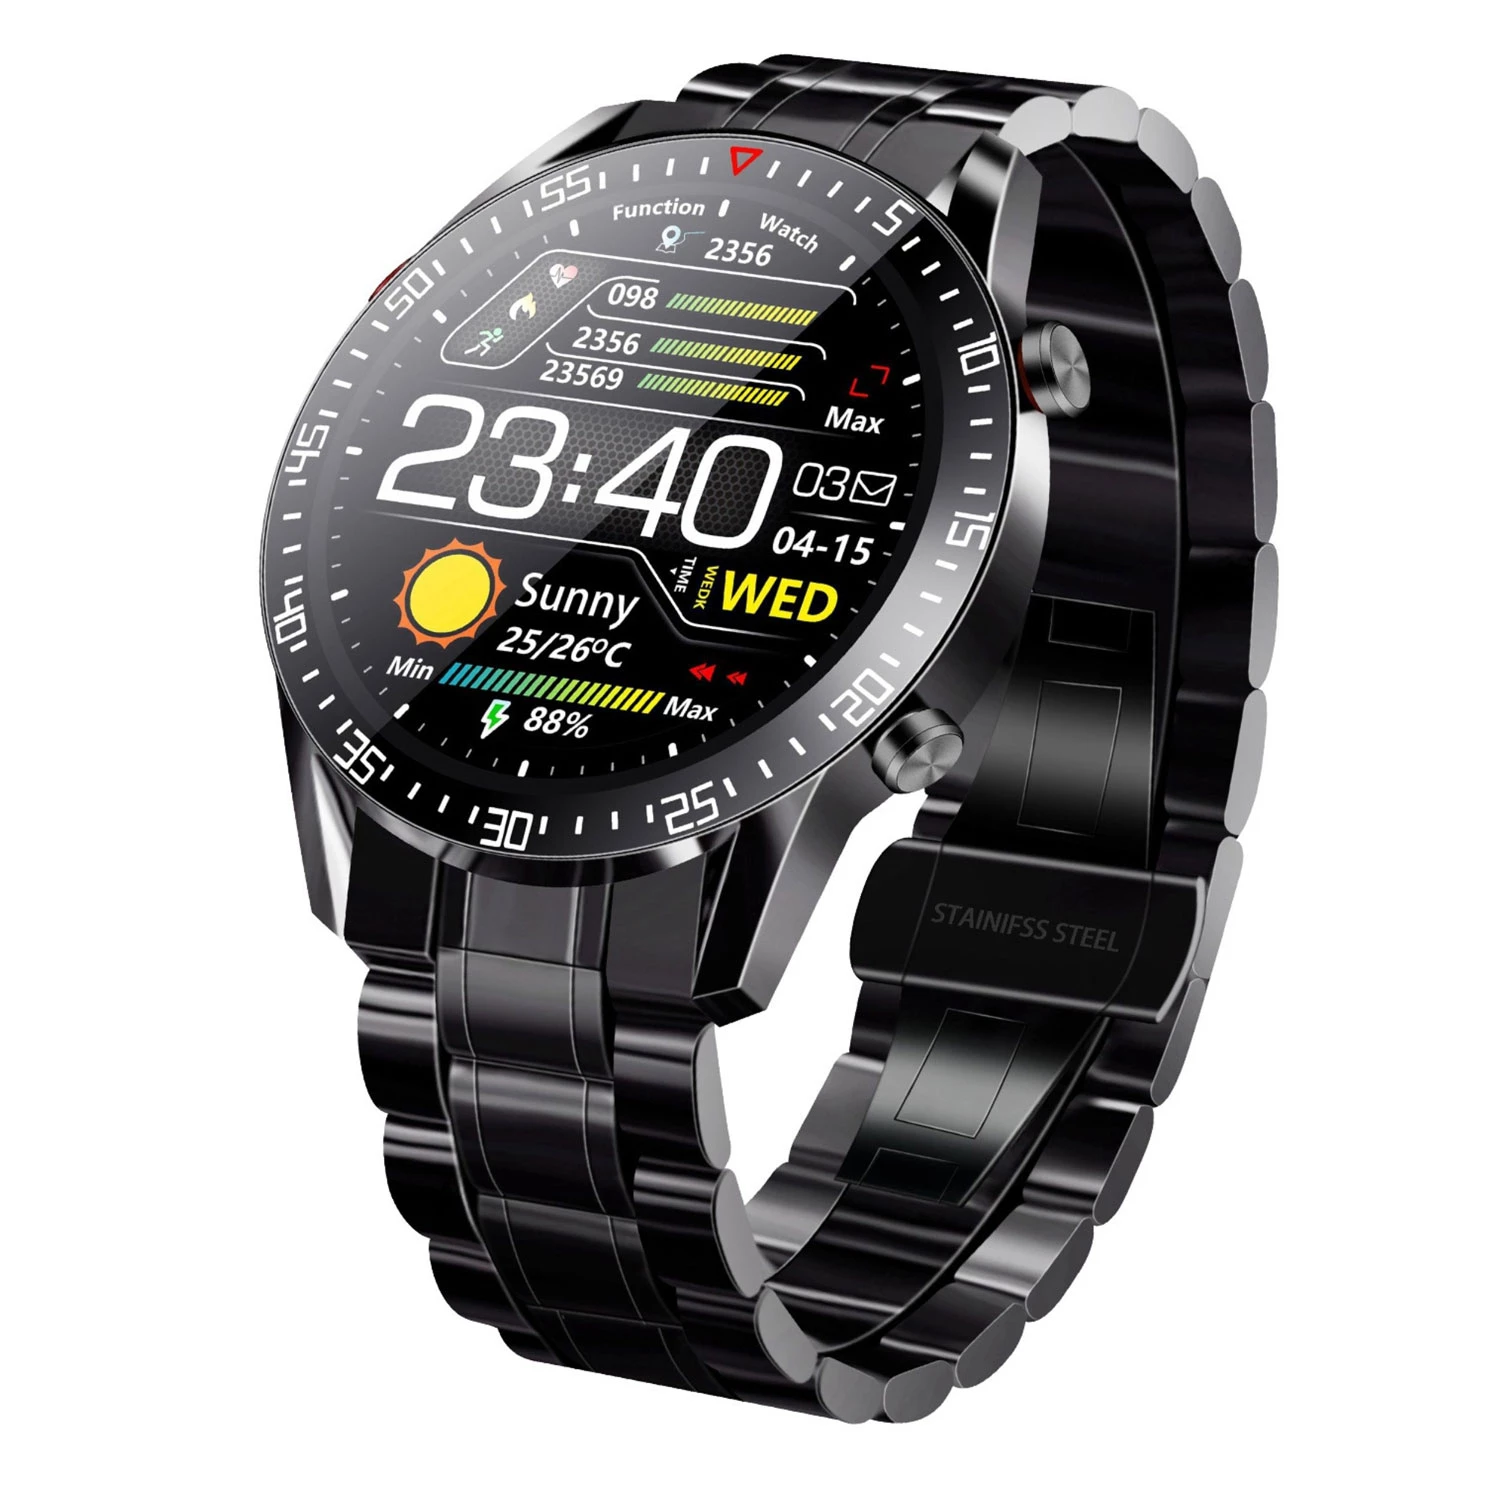 Wireless Smart Watch Fitness Tracker - IP68 Waterproof, Heart Rate, Blood Pressure